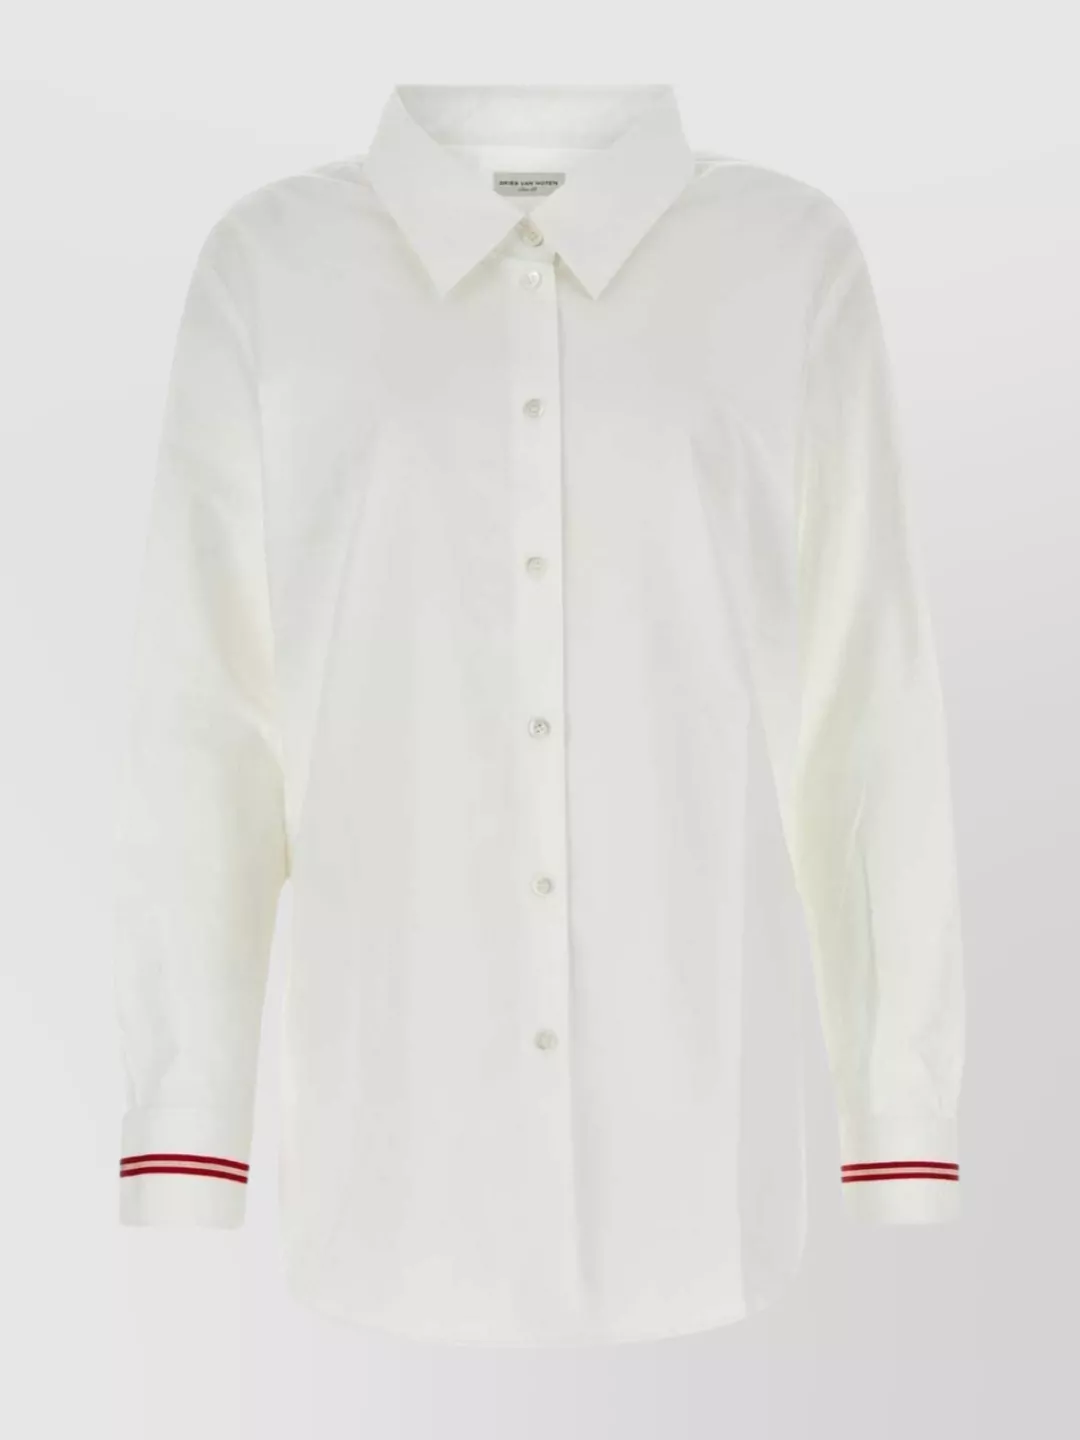 Dries Van Noten Crisp Cotton Shirt With Trim And Cuffs In White